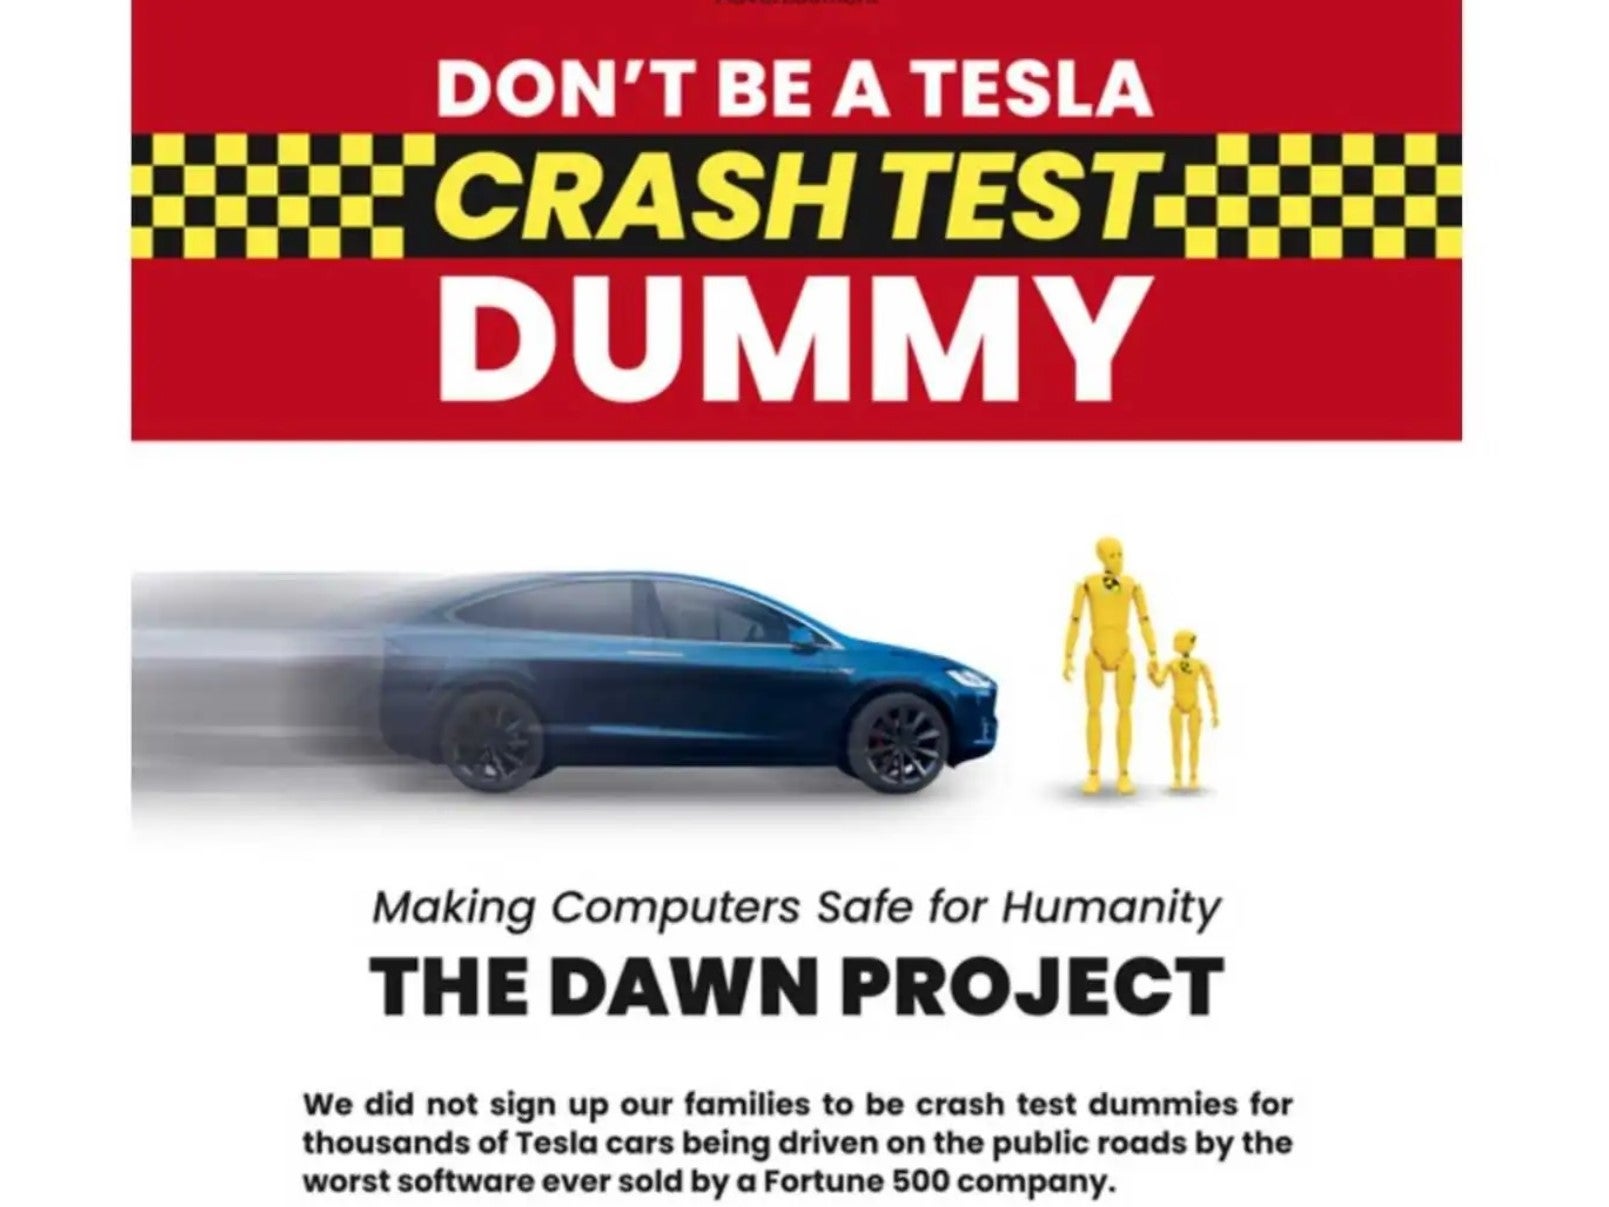 The Dawn Project, fundado por Dan O’Dowd, pagó por un anuncio en el New York Times que afirma que el software FSD (Full Self-Driving) de Tesla es “el peor software vendido por una compañía Fortune 500”